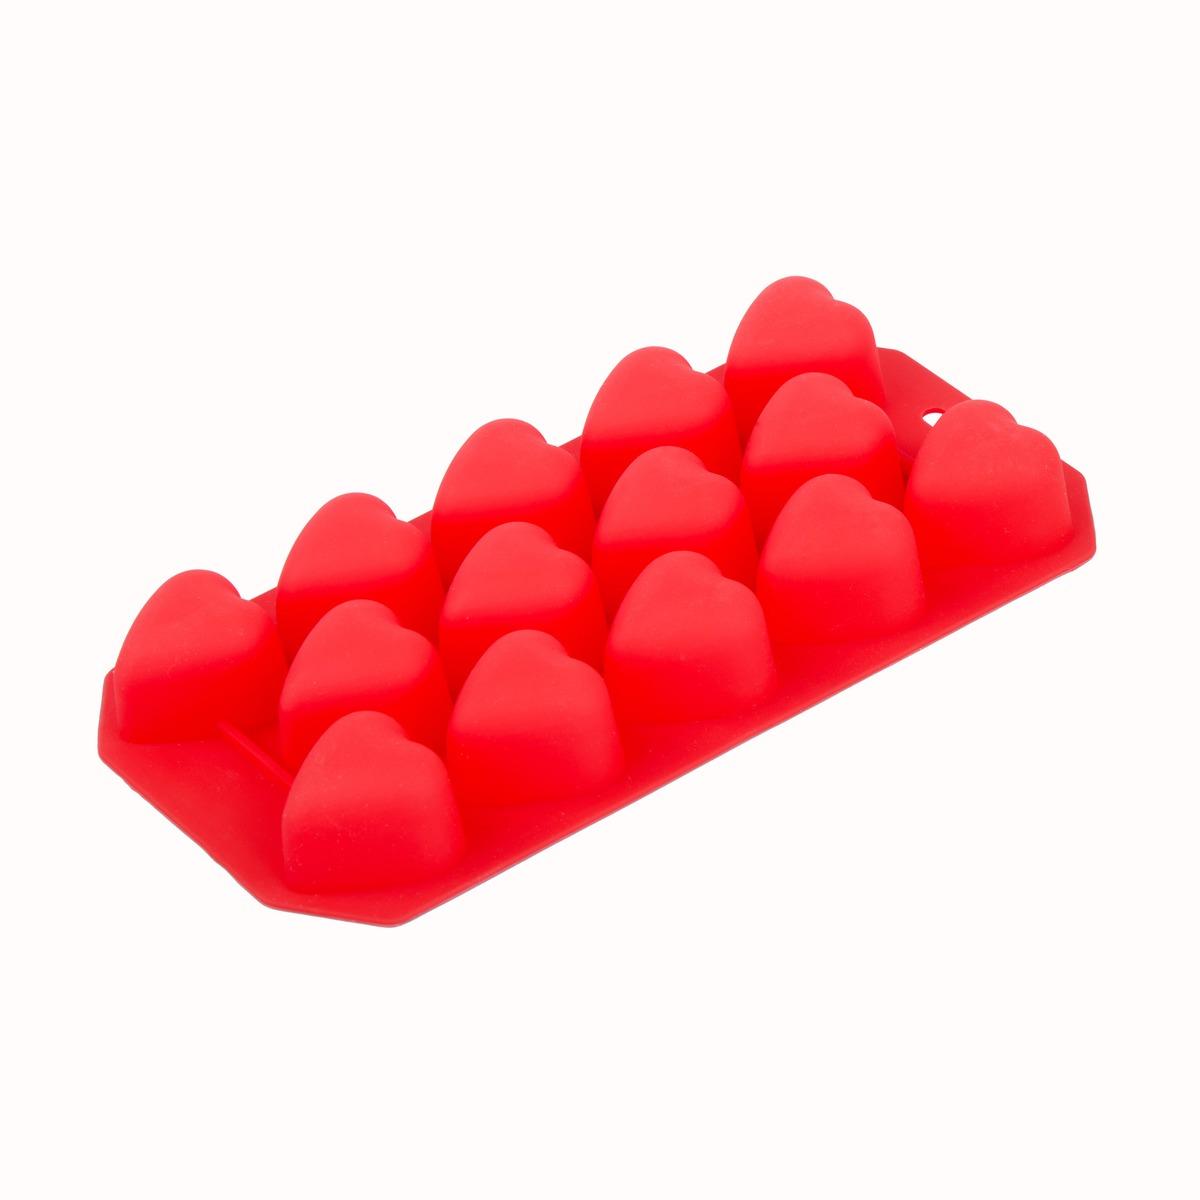 Plaque de 14 moules silicone en forme de cœurs - 21,5 x 11 x 2,3 cm - Rouge